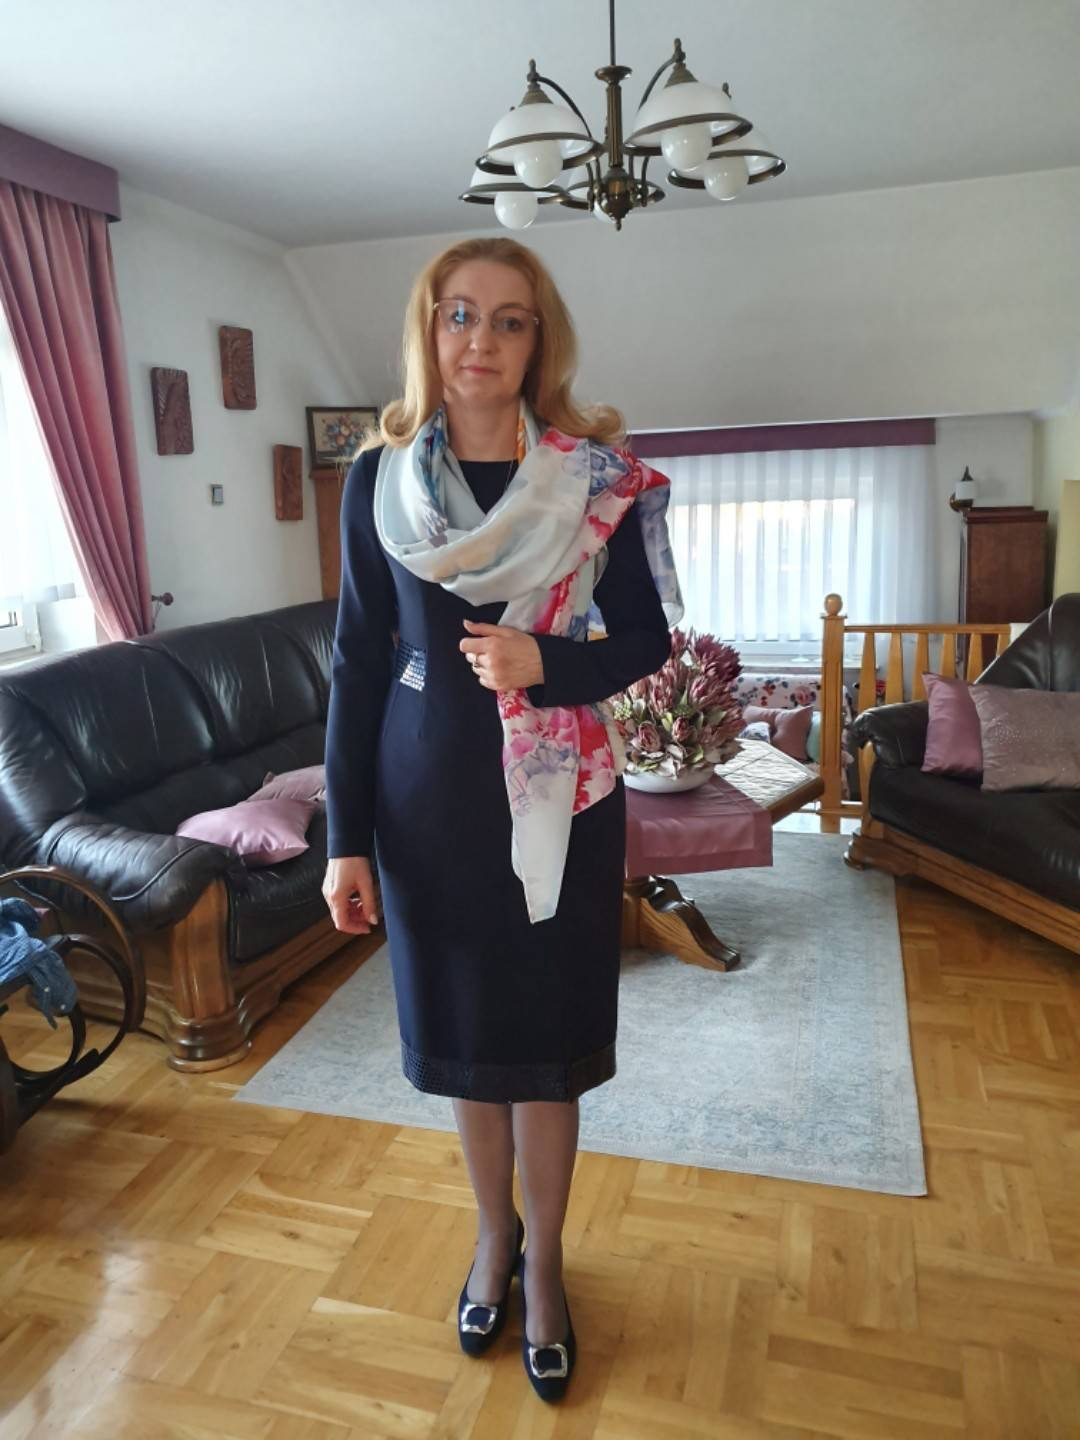 Szanowana polska biznesmenka Pani Agnieszka Malinowska w eleganckiej sukience szytej na miarę w De Marco